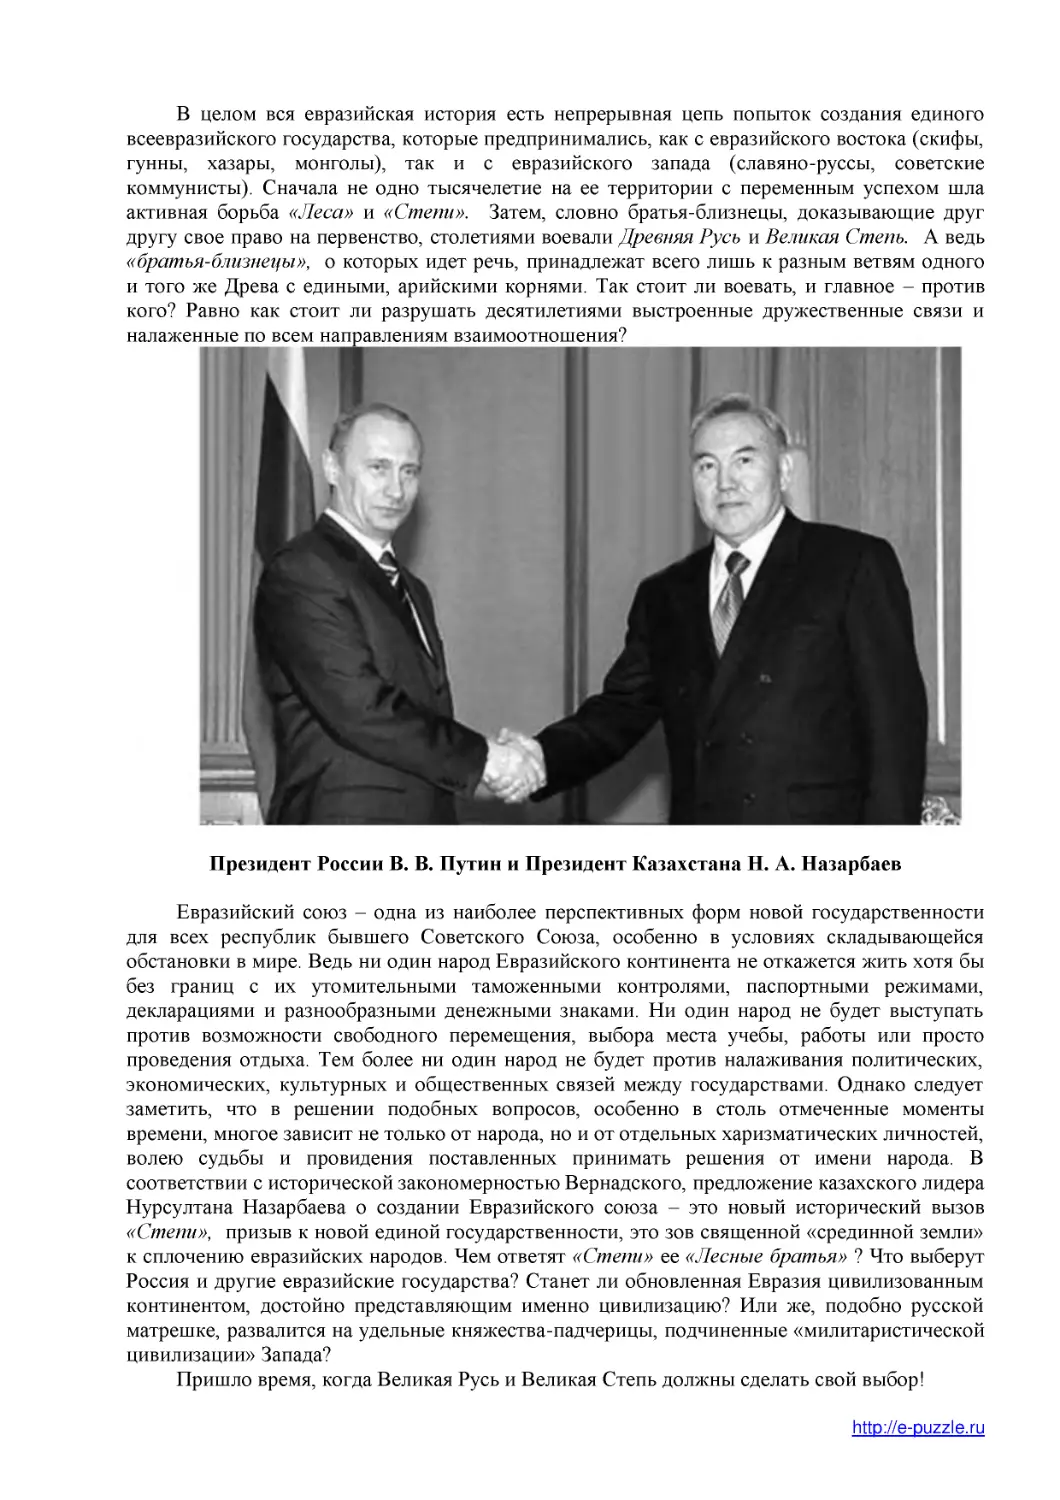 Президент России В. В. Путин и Президент Казахстана Н. А. Назарбаев